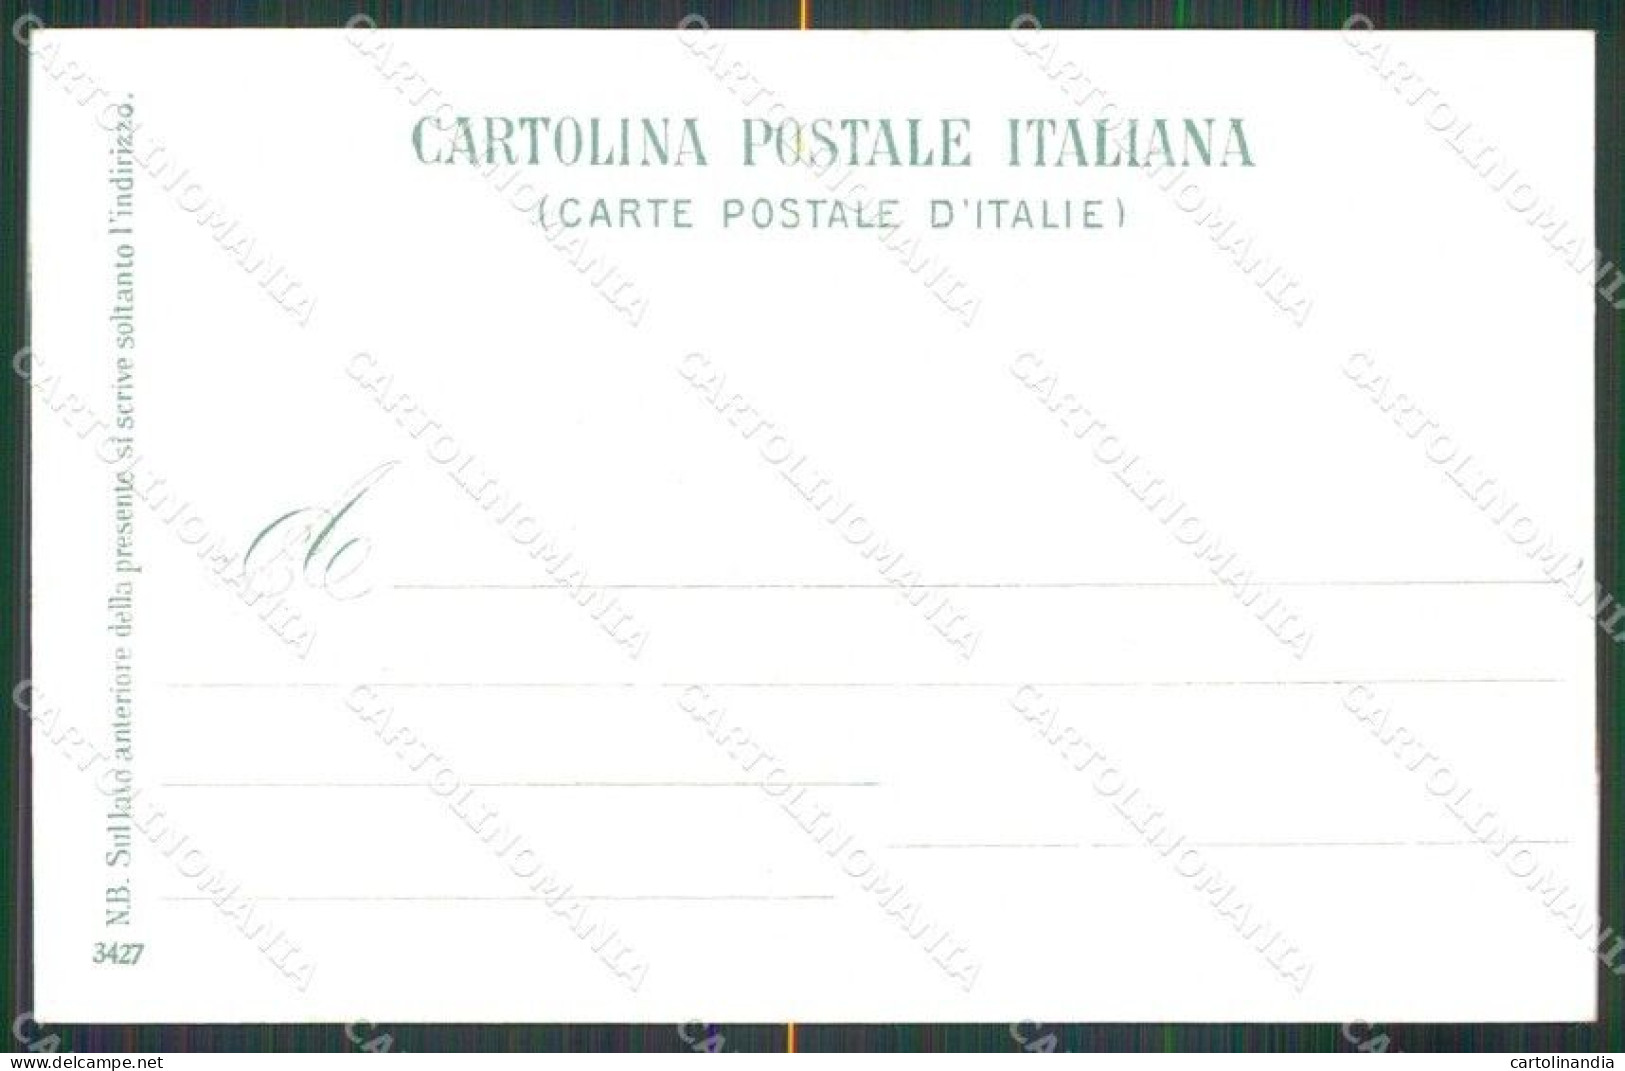 Salerno Cava De' Tirreni Corpo Di Cava E S. S. Trinità Cartolina RB7001 - Salerno